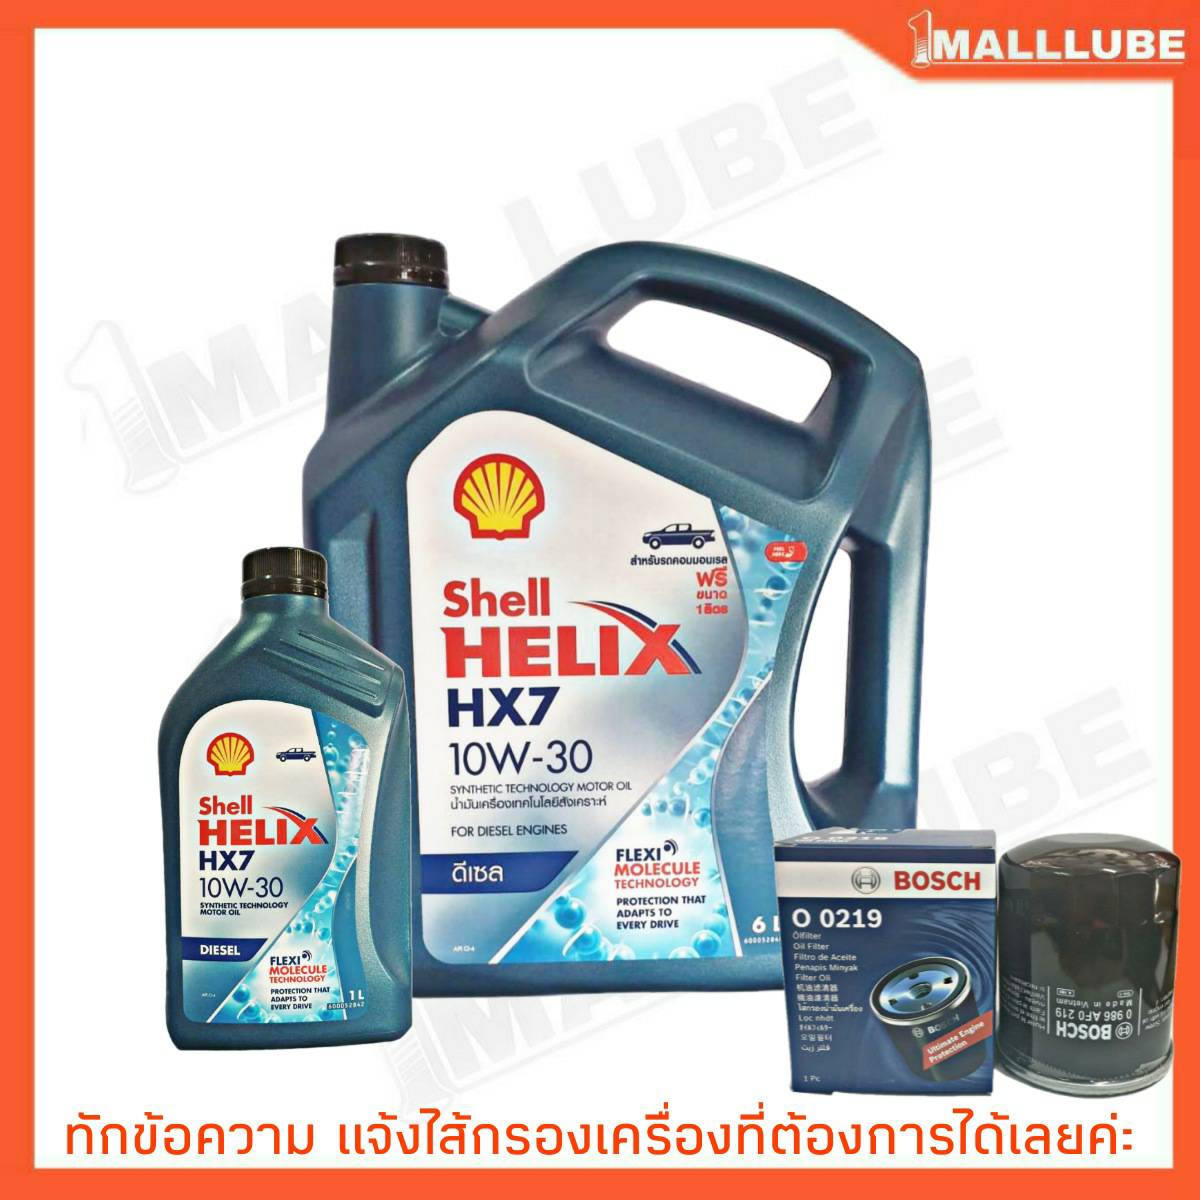 Shell HELIX HX7 10W-30 7L. DIESEL ดีเซล เชลล์ เฮลิกซ์ น้ำมันเครื่องยนต์ **รับฟรี ไส้กรองน้ำมันเครื่อง Bosch 1ลูก (ทักข้อความ เลือกรุ่นรถได้ค่ะ)